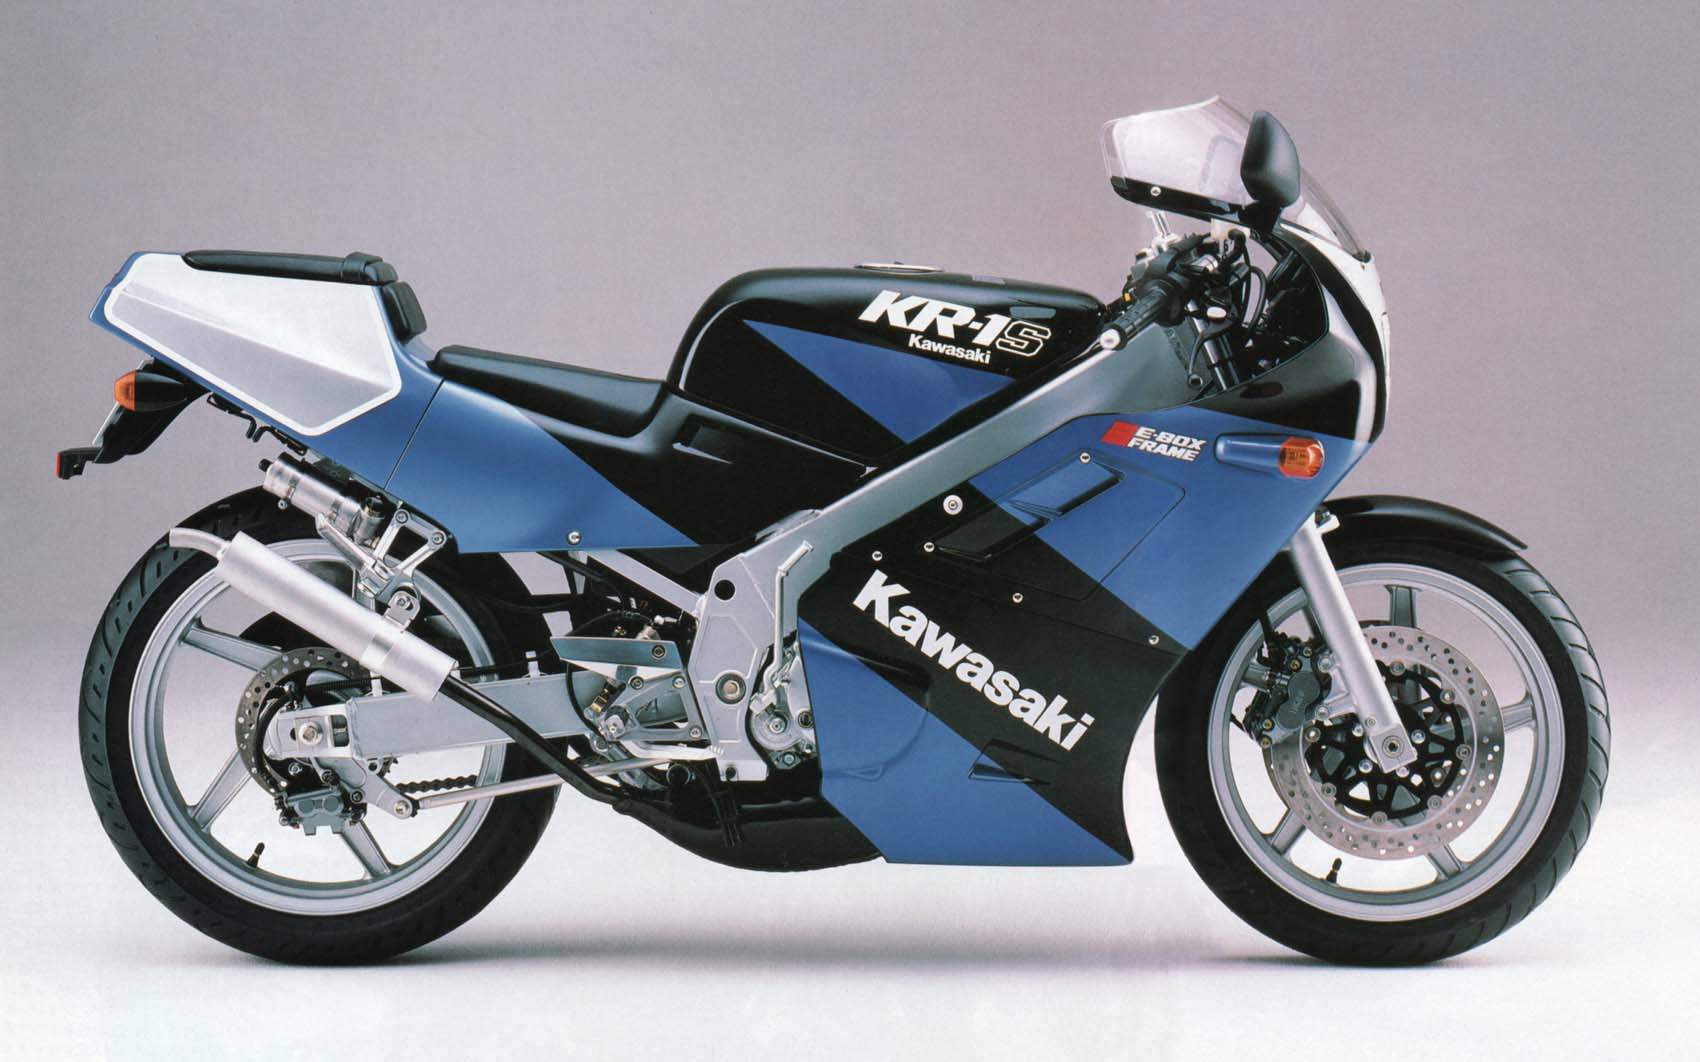 Kawasaki Kr 1s